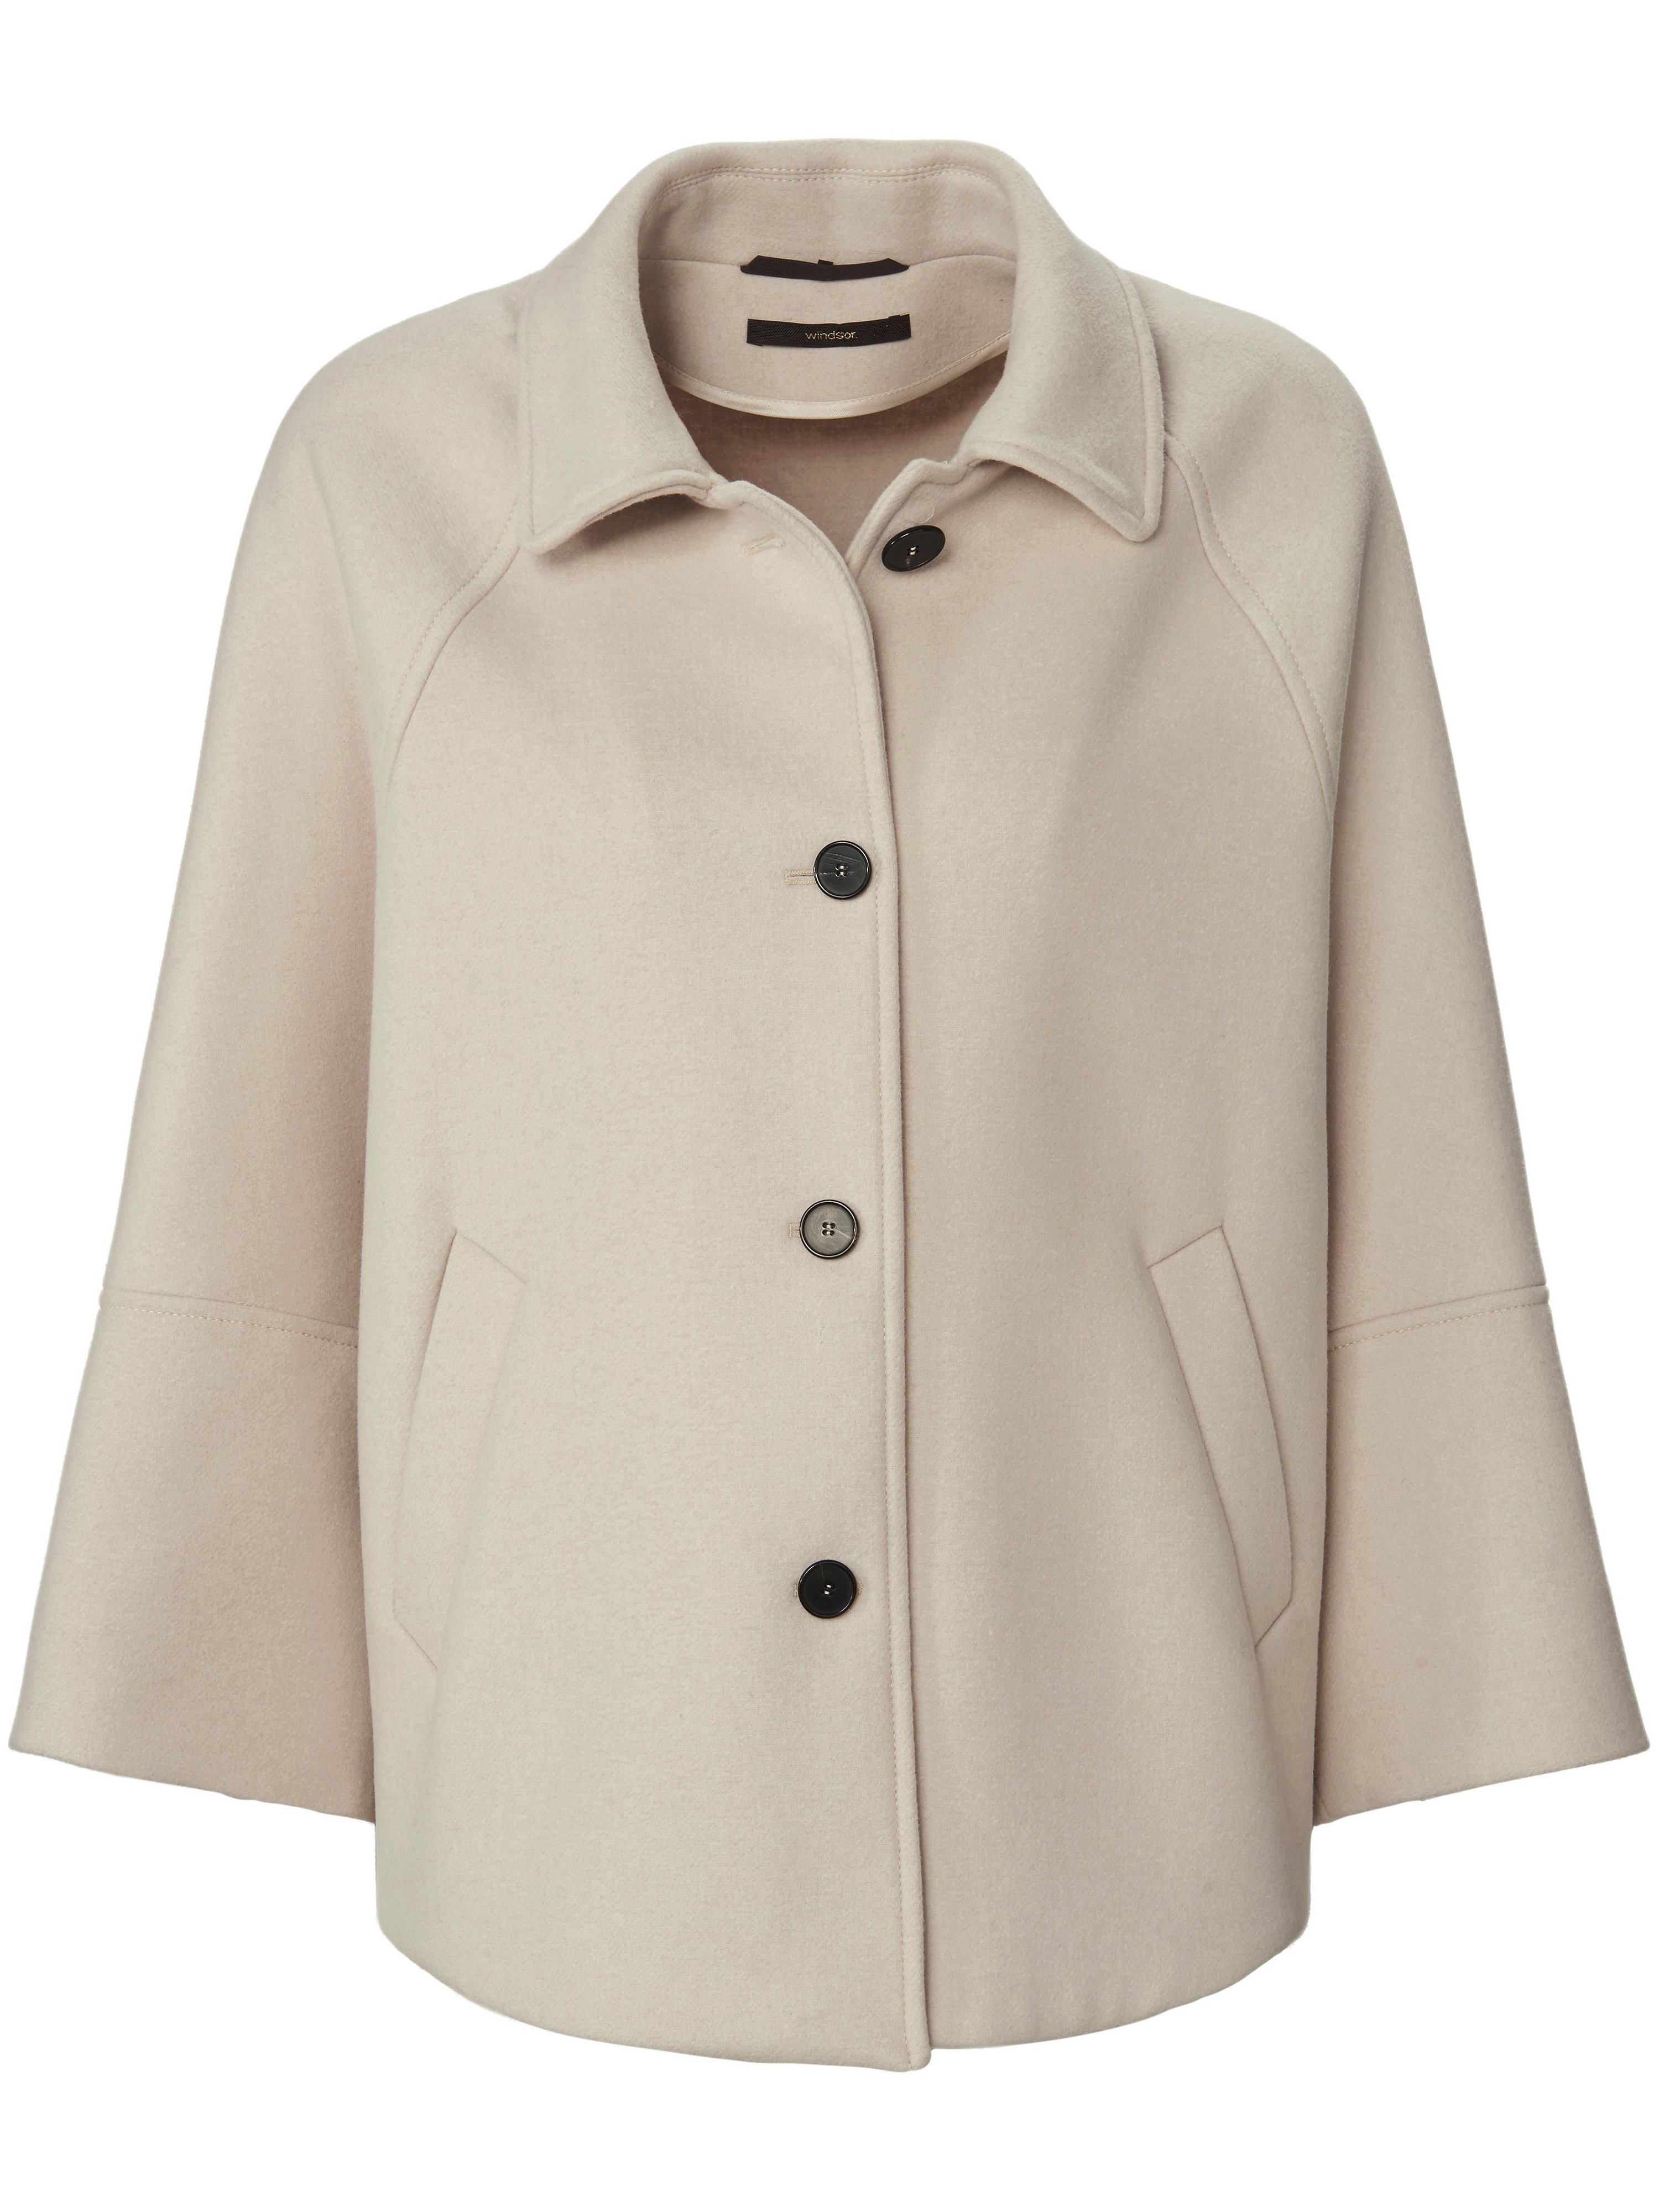 La veste cape avec manches 3/4 raglan  Windsor beige taille 40